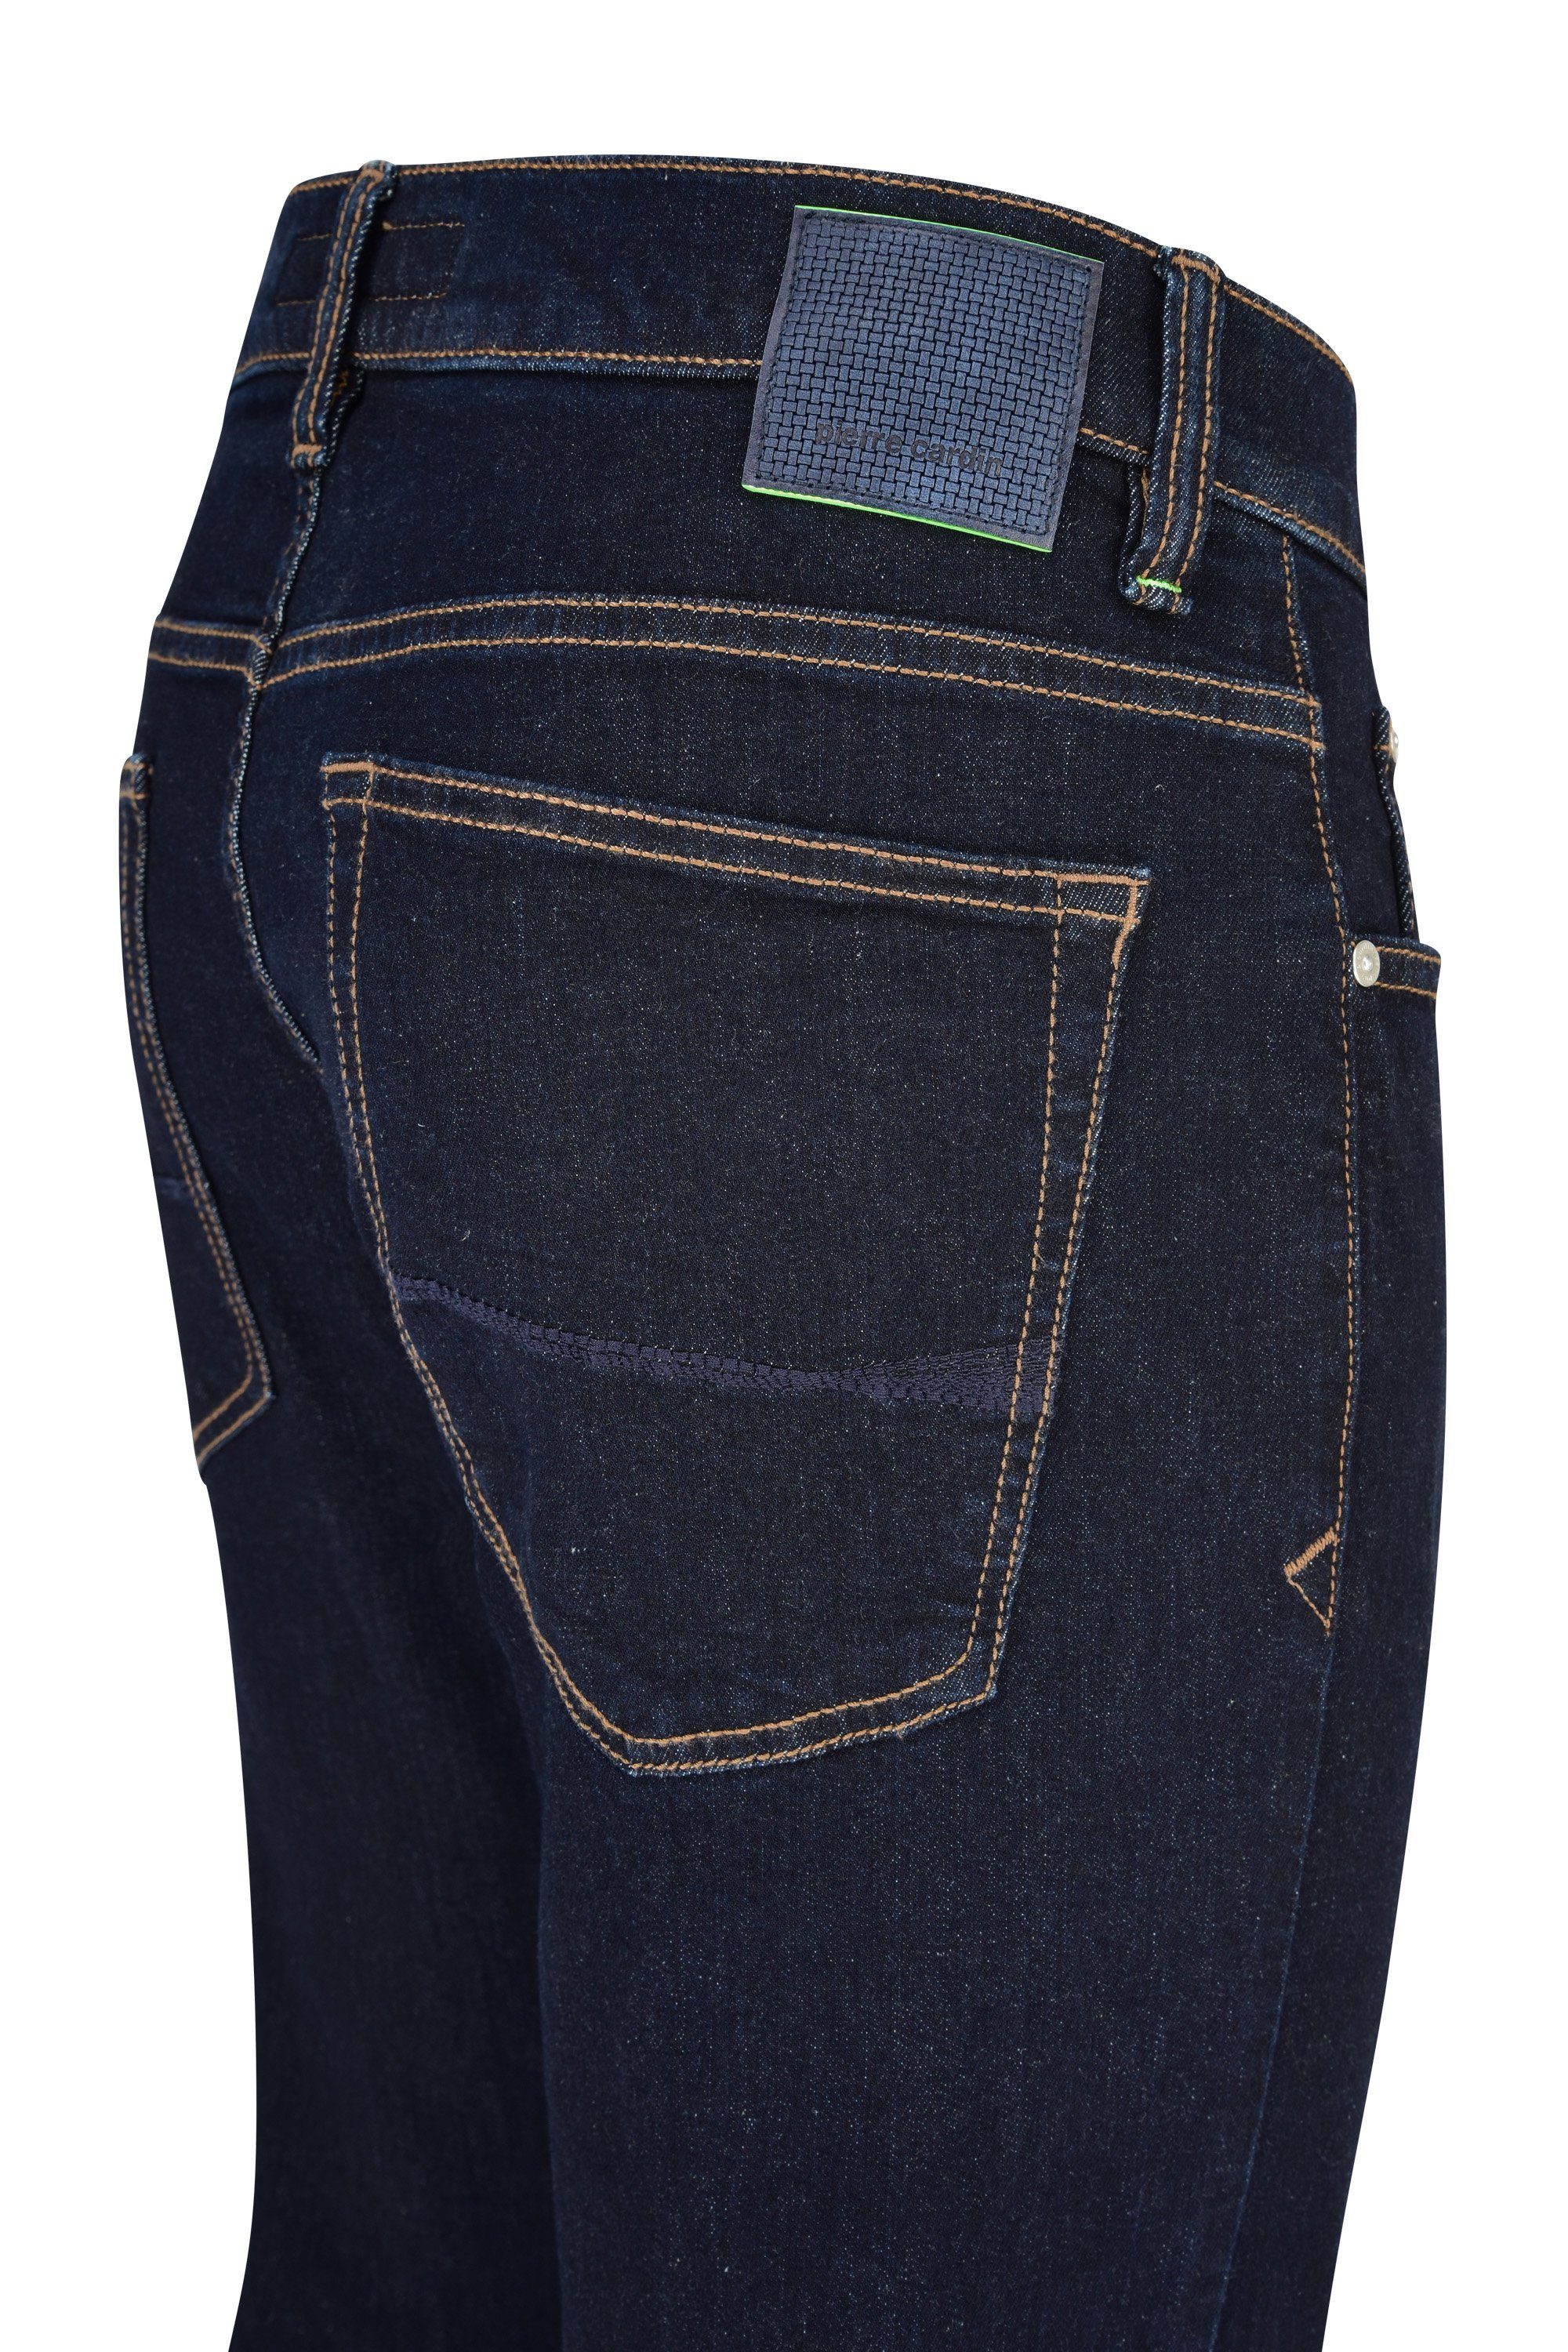 Pierre Cardin ANTIBES CARDIN deep 5-Pocket-Jeans 3003 blue PIERRE 6100.51